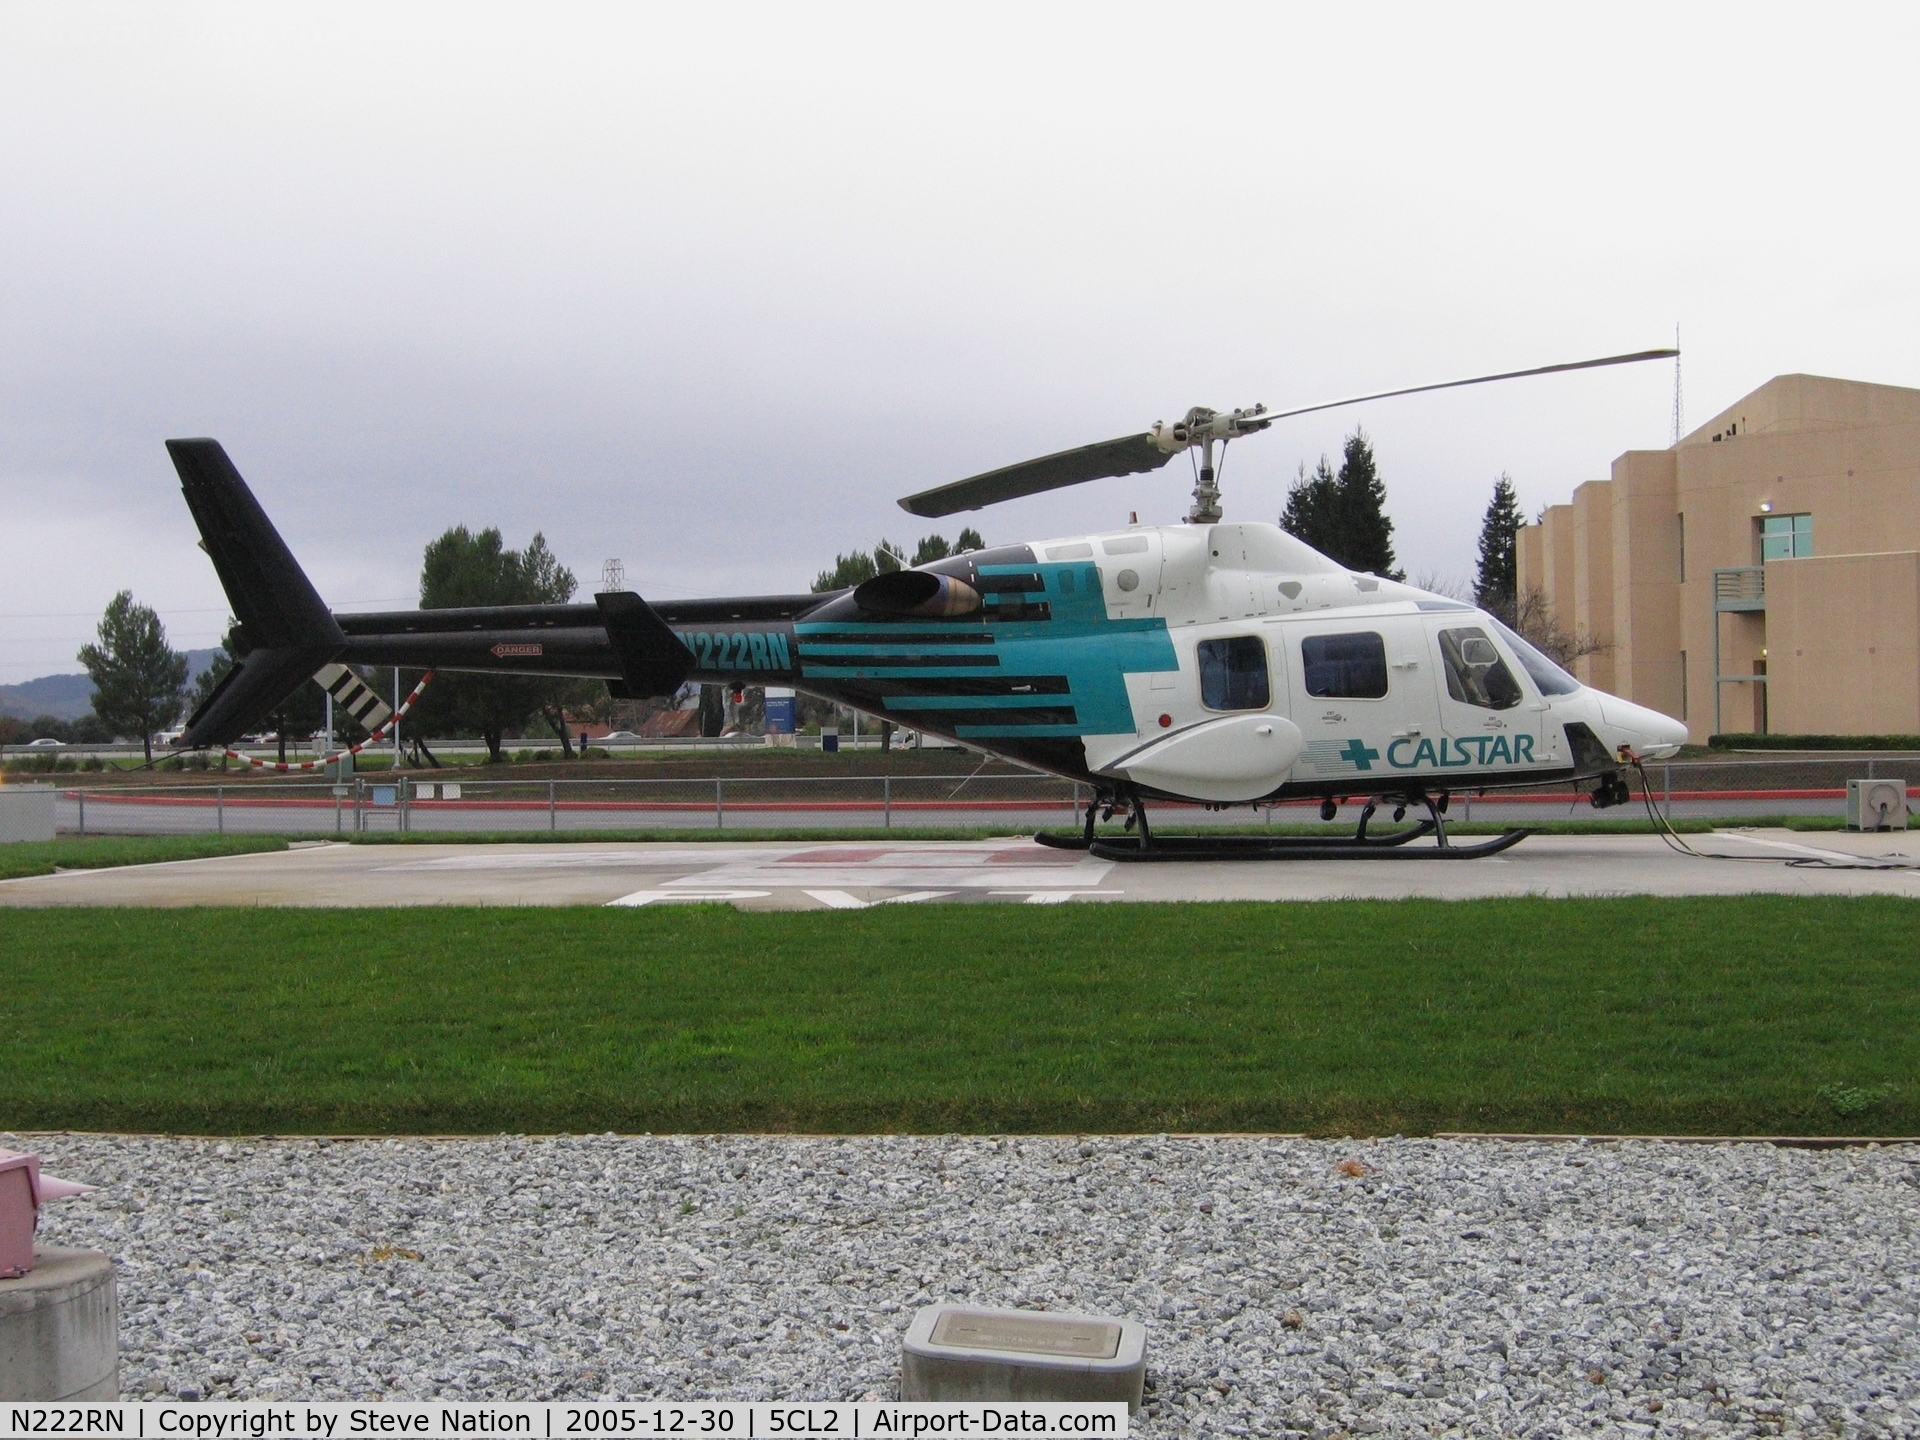 N222RN, 1988 Bell 222U C/N 47571, CALSTAR 1988 Bell 222 medivac at St. Louise Hospital helipad, Gilroy, CA